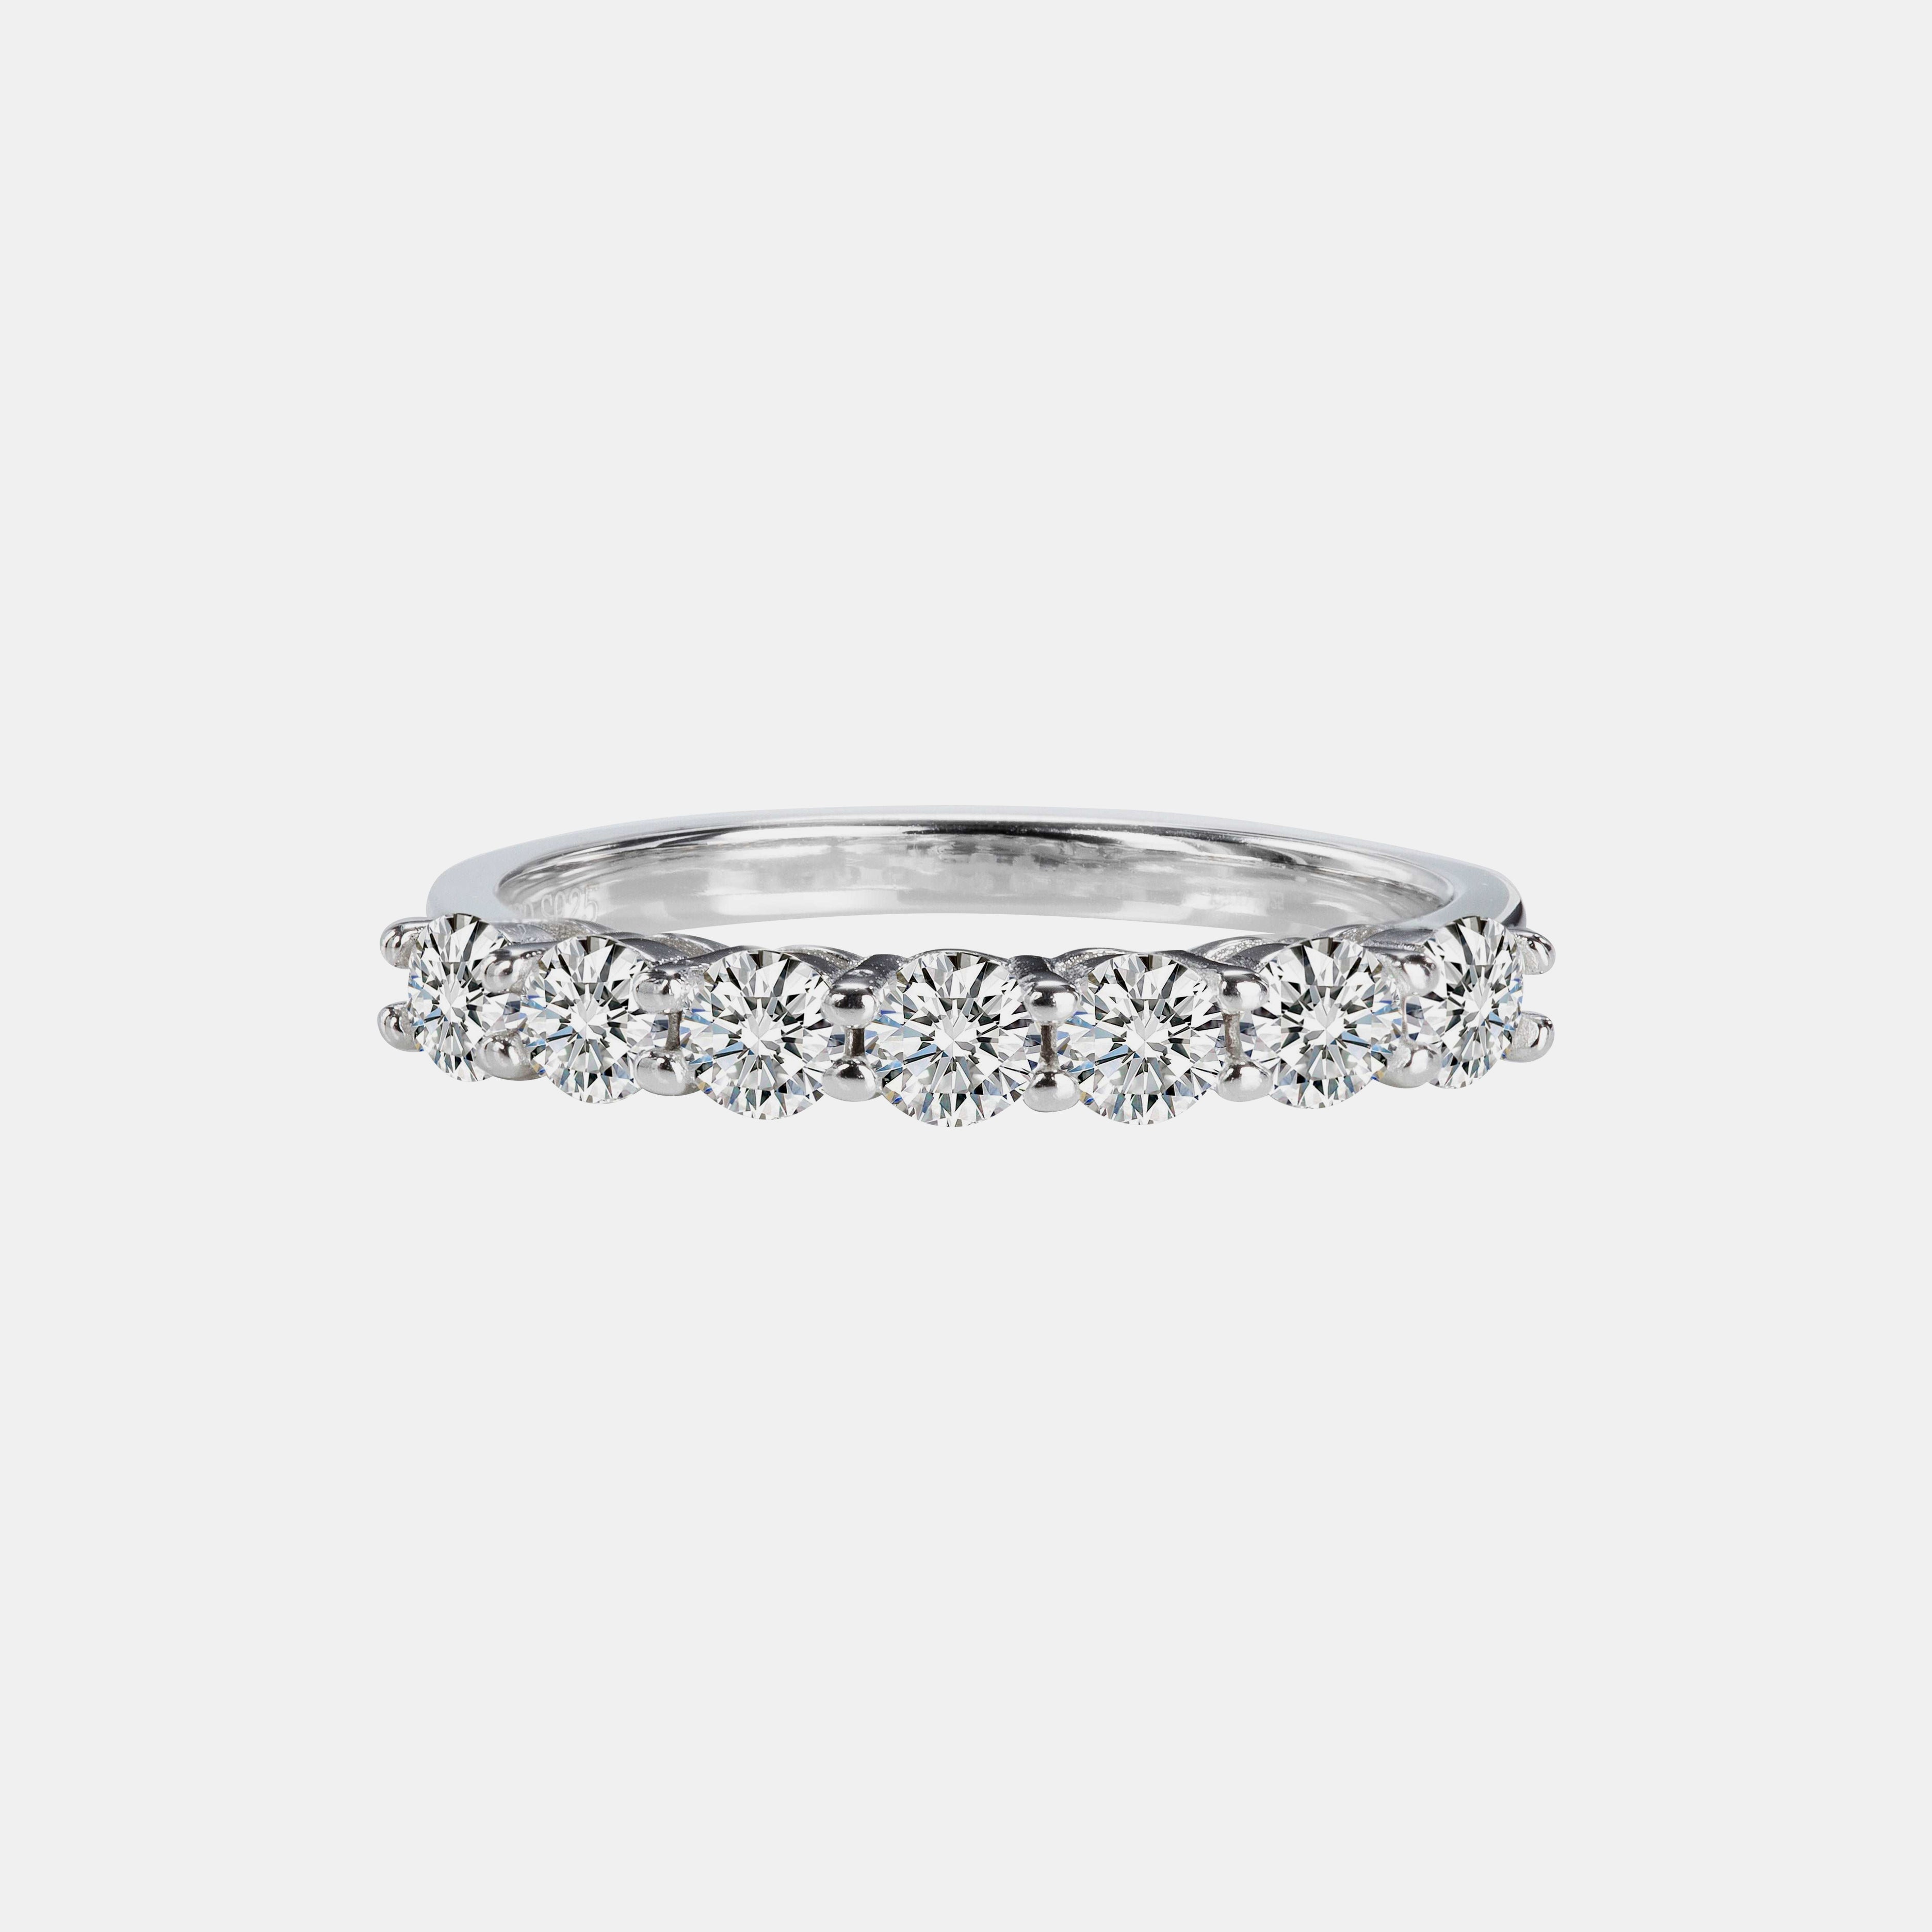 【#27】925 Sterling Silver Moissanite Ring